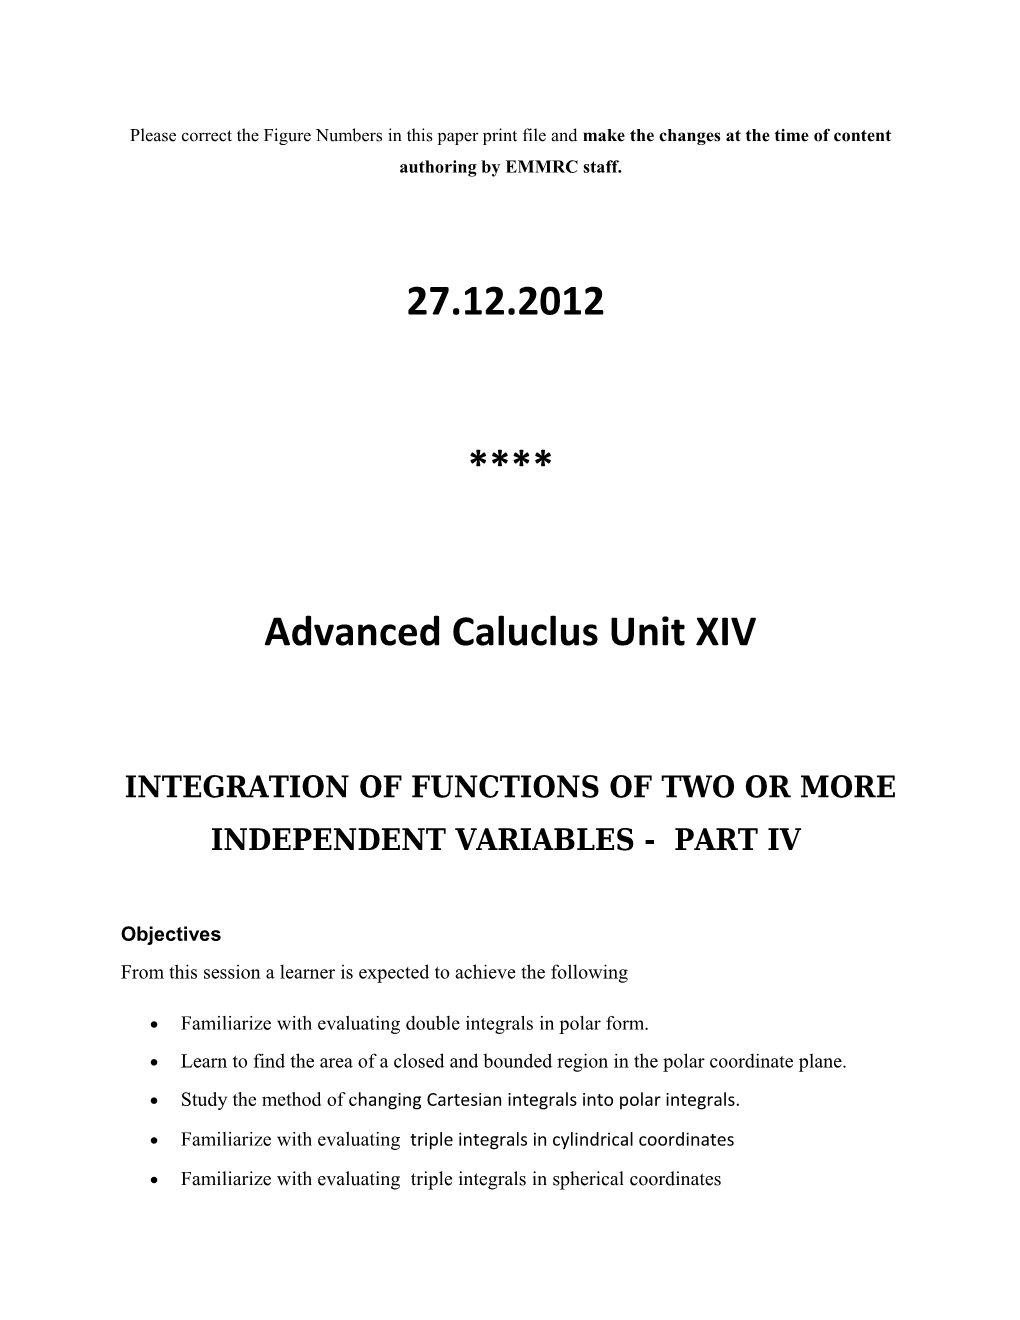 Advanced Caluclus Unit XIV